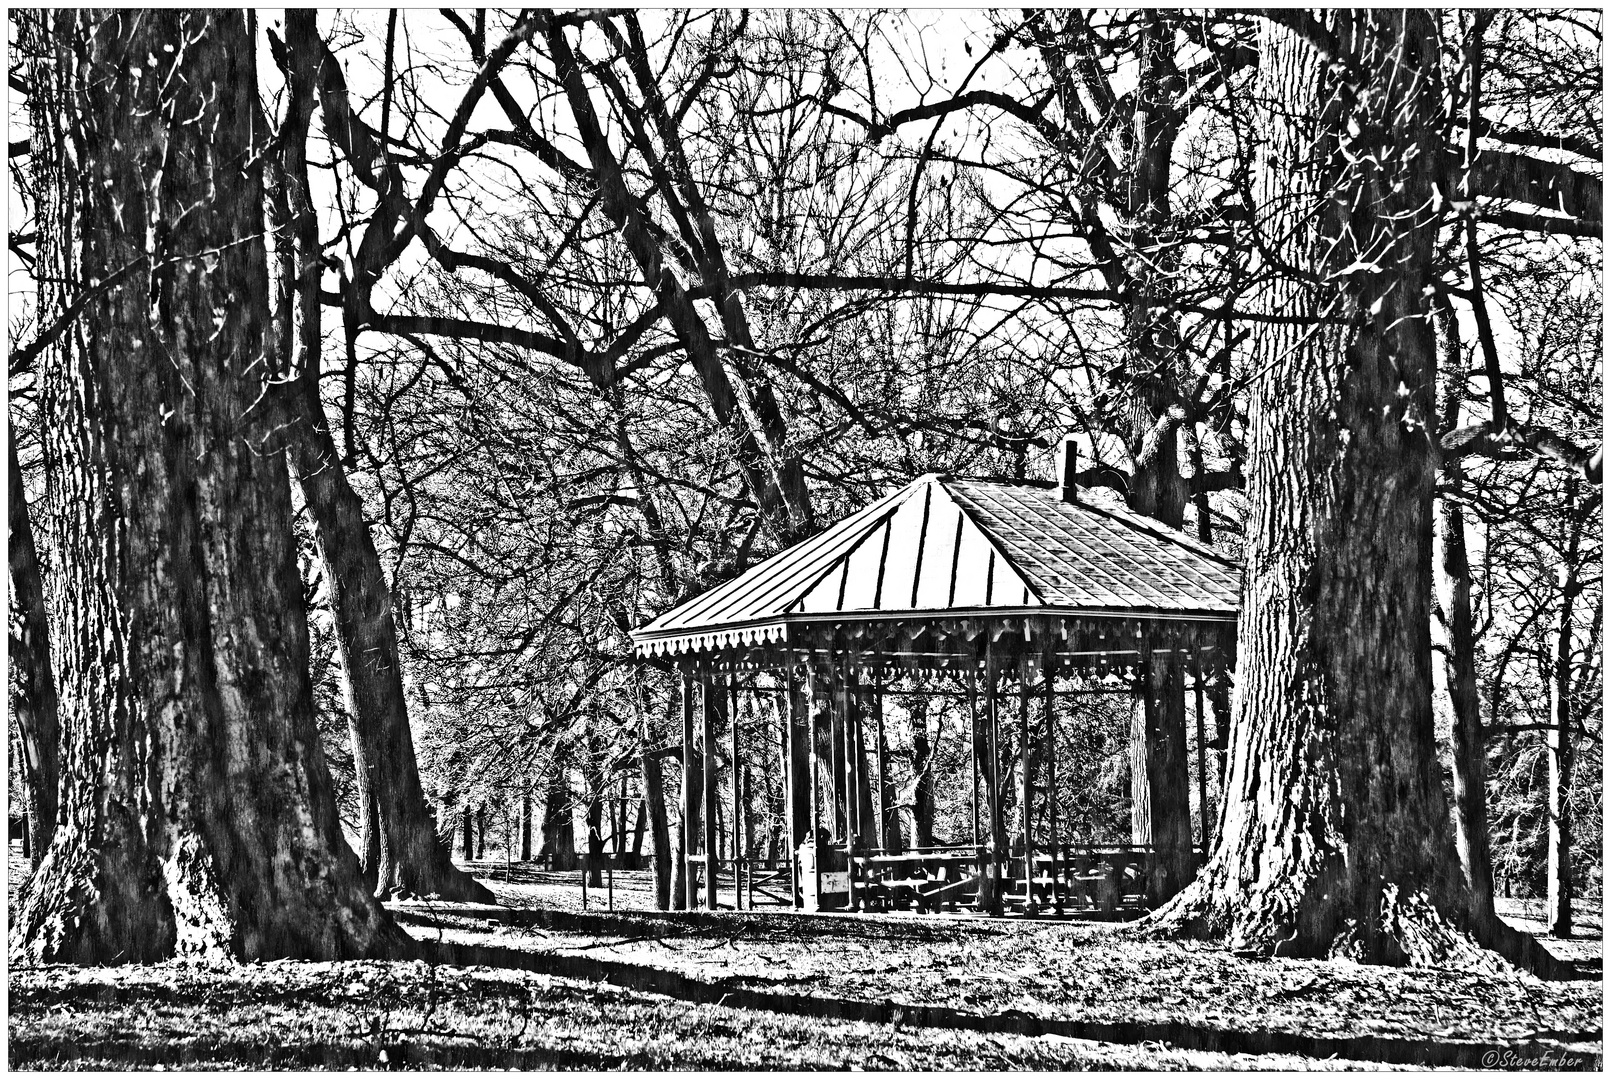 A Pavilion in the Park - Druid Hill Park Impression